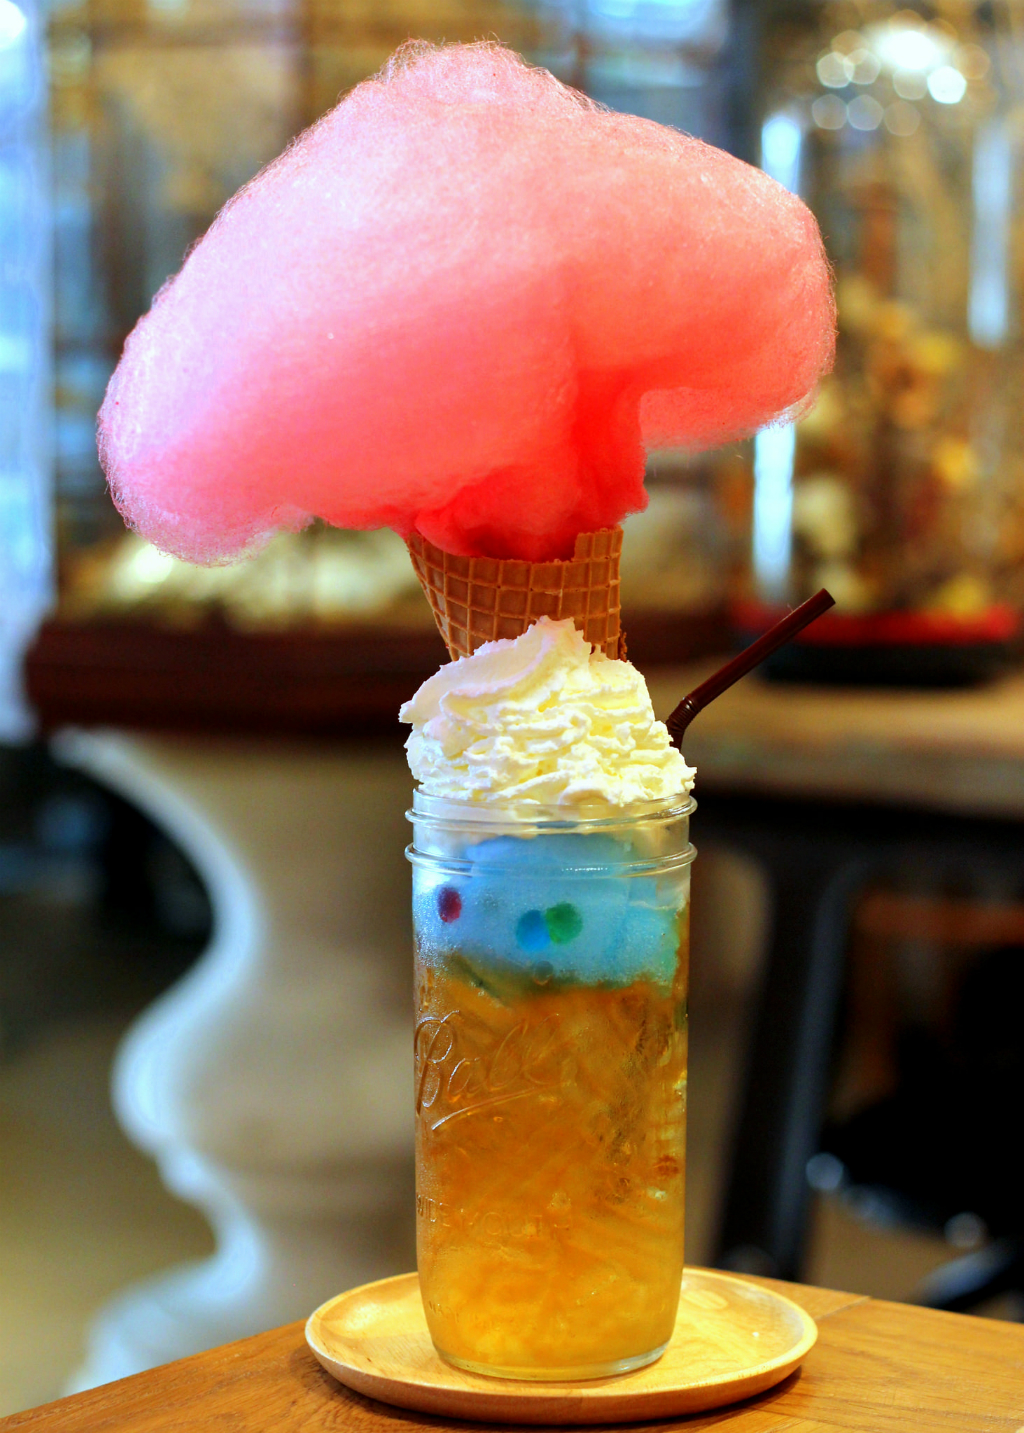 曼谷甜点:一旦社会酒吧和咖啡馆的Einstein-looking爆炸饮料